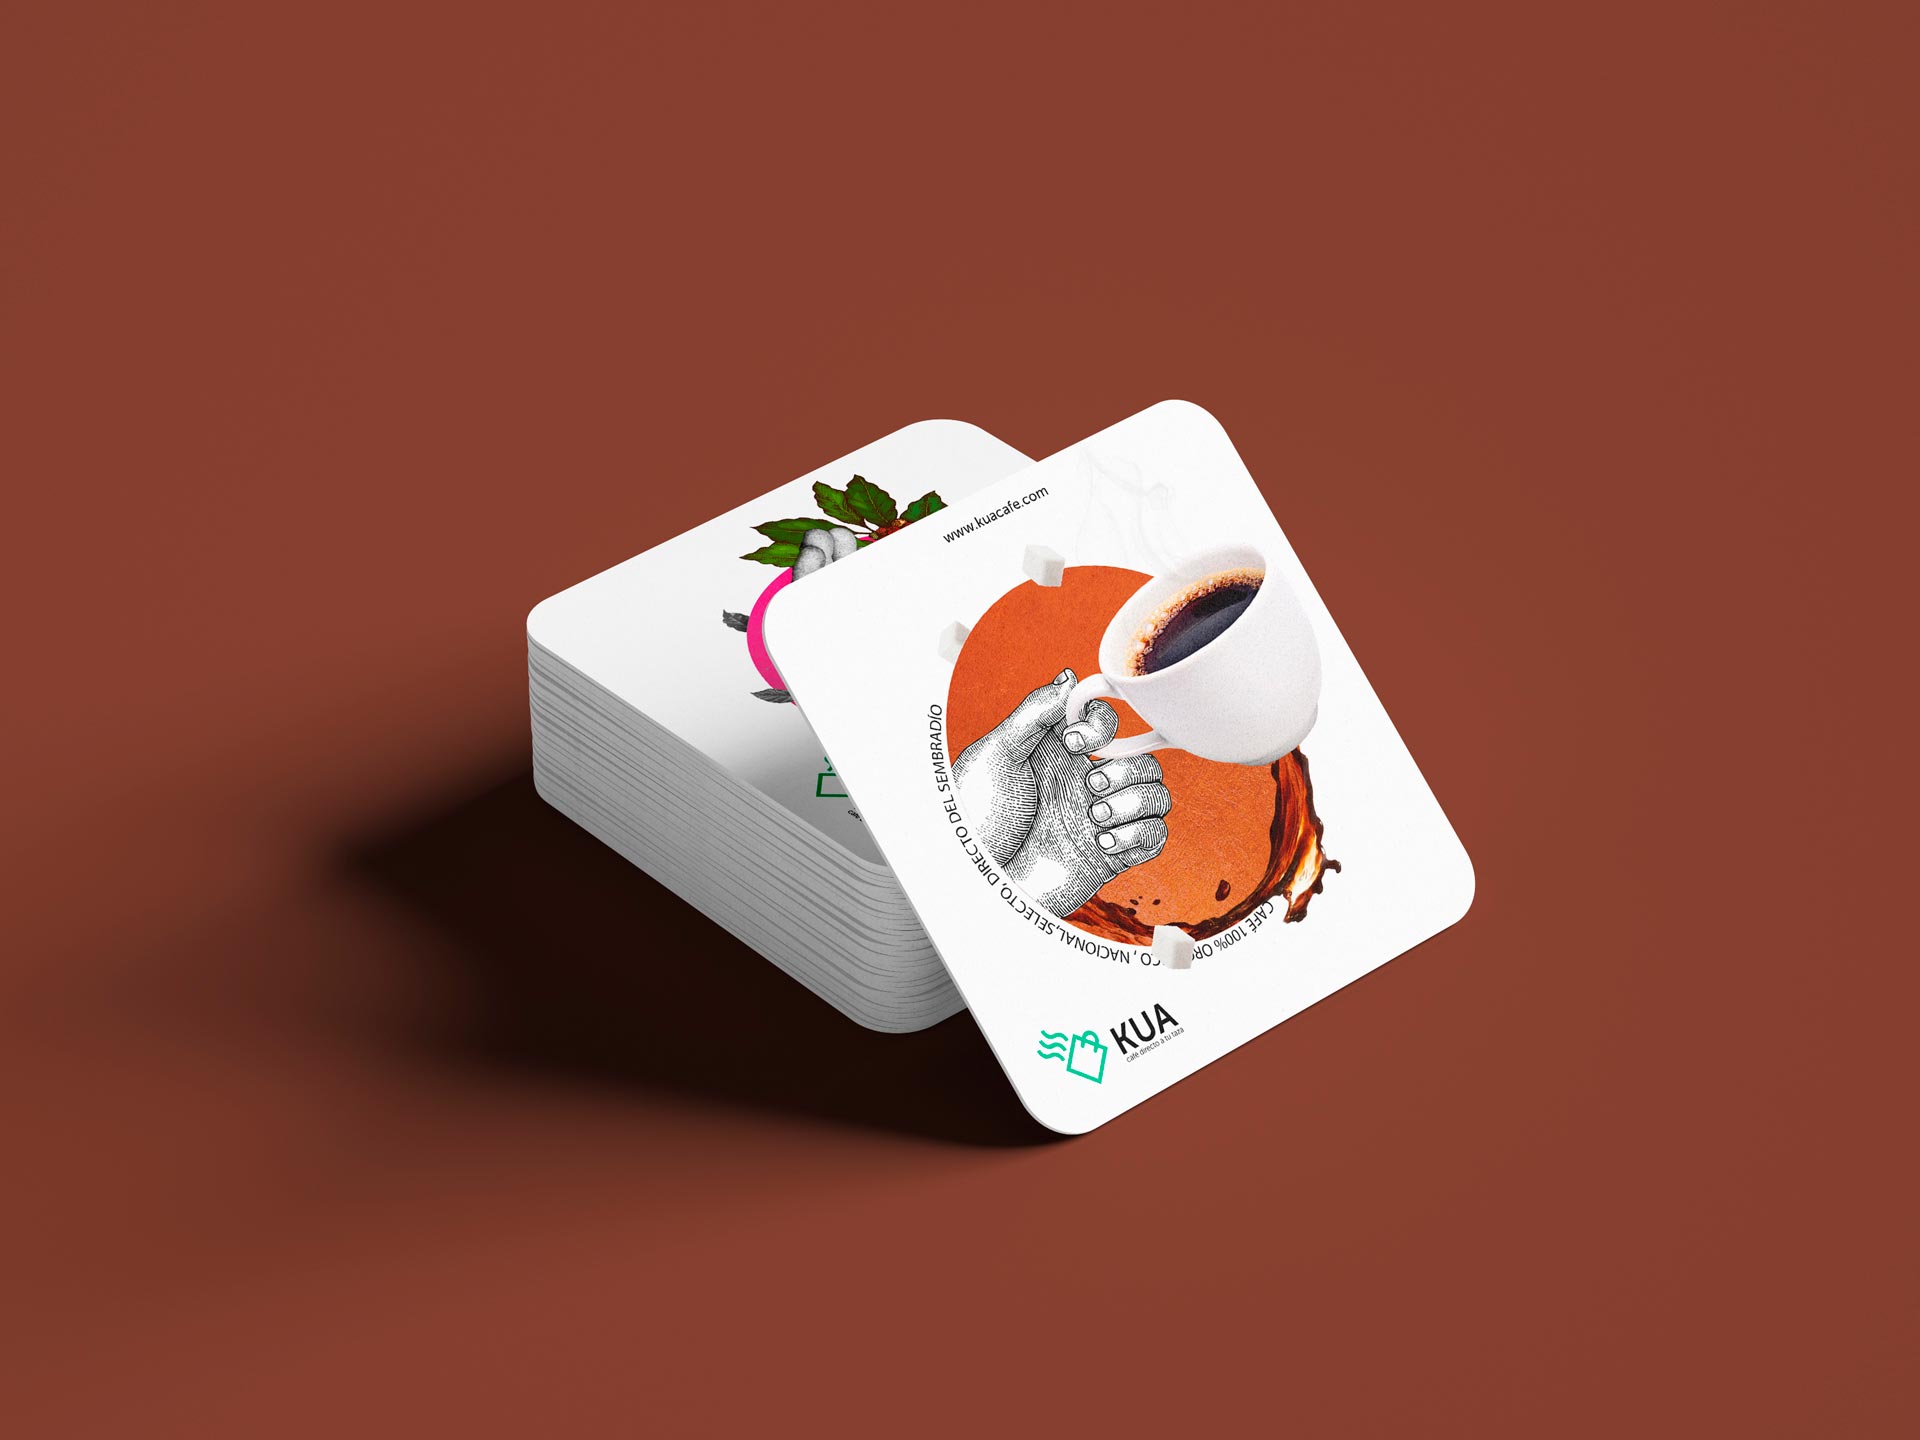 herrera-branding-studio-kua-coffee-brand-identity-coaster-packaging